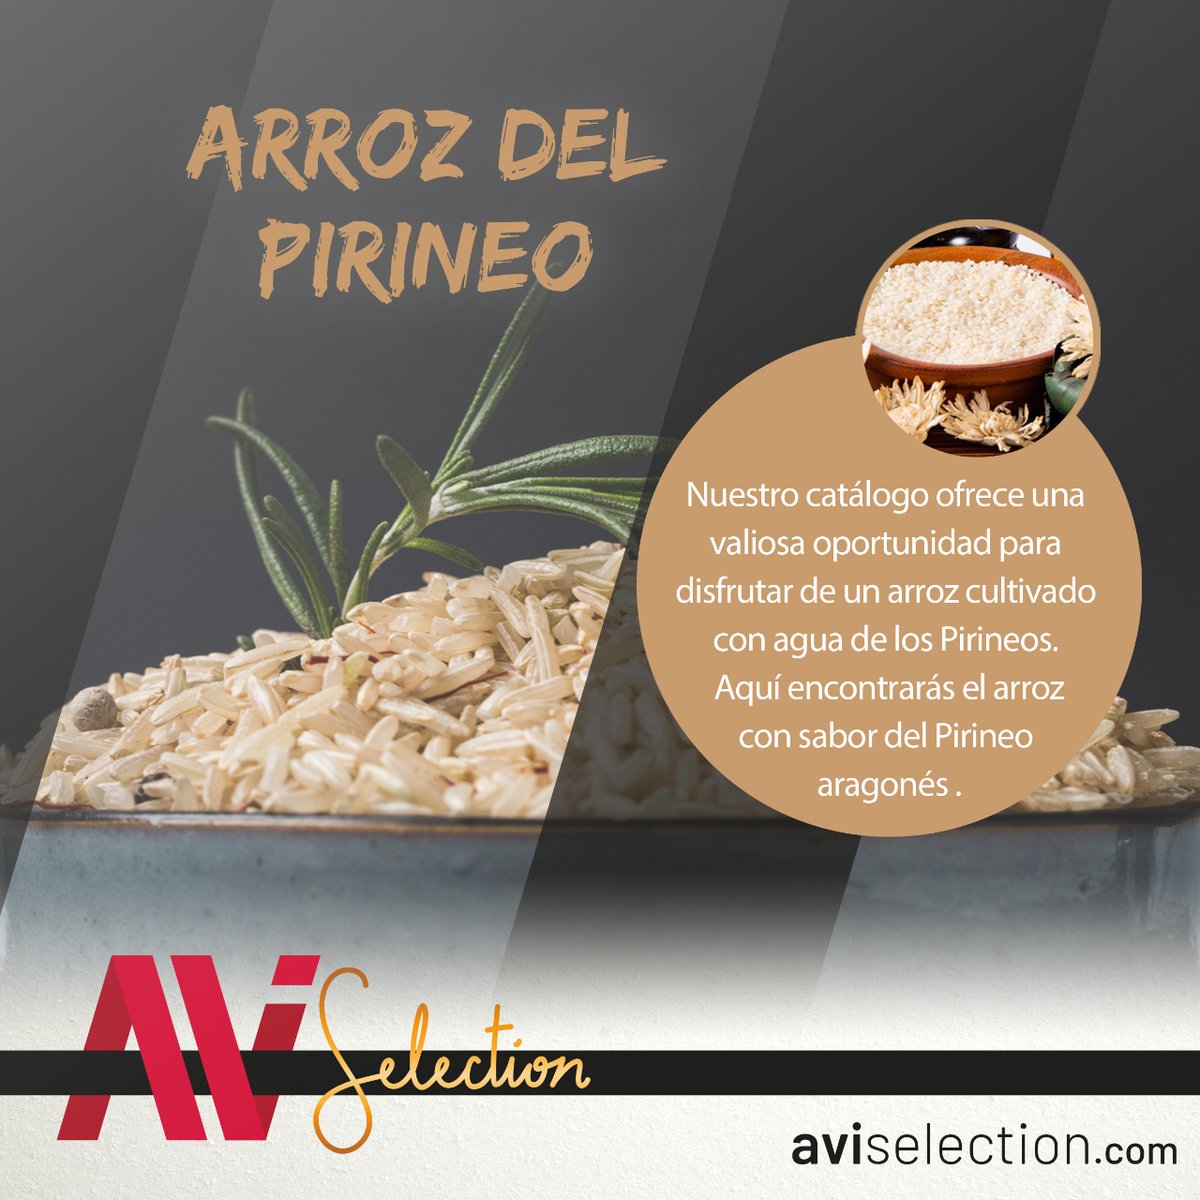 🌾🏞️ ¿Listo para descubrir el sabor de los Pirineos de un solo bocado? 🍚 En nuestro catálogo tienes una gran oportunidad para disfrutar de un arroz cultivado en el Pirineo.  🔗Elije tu favorito en: aviselection.com/58-arroz-del-p… #AVISelection